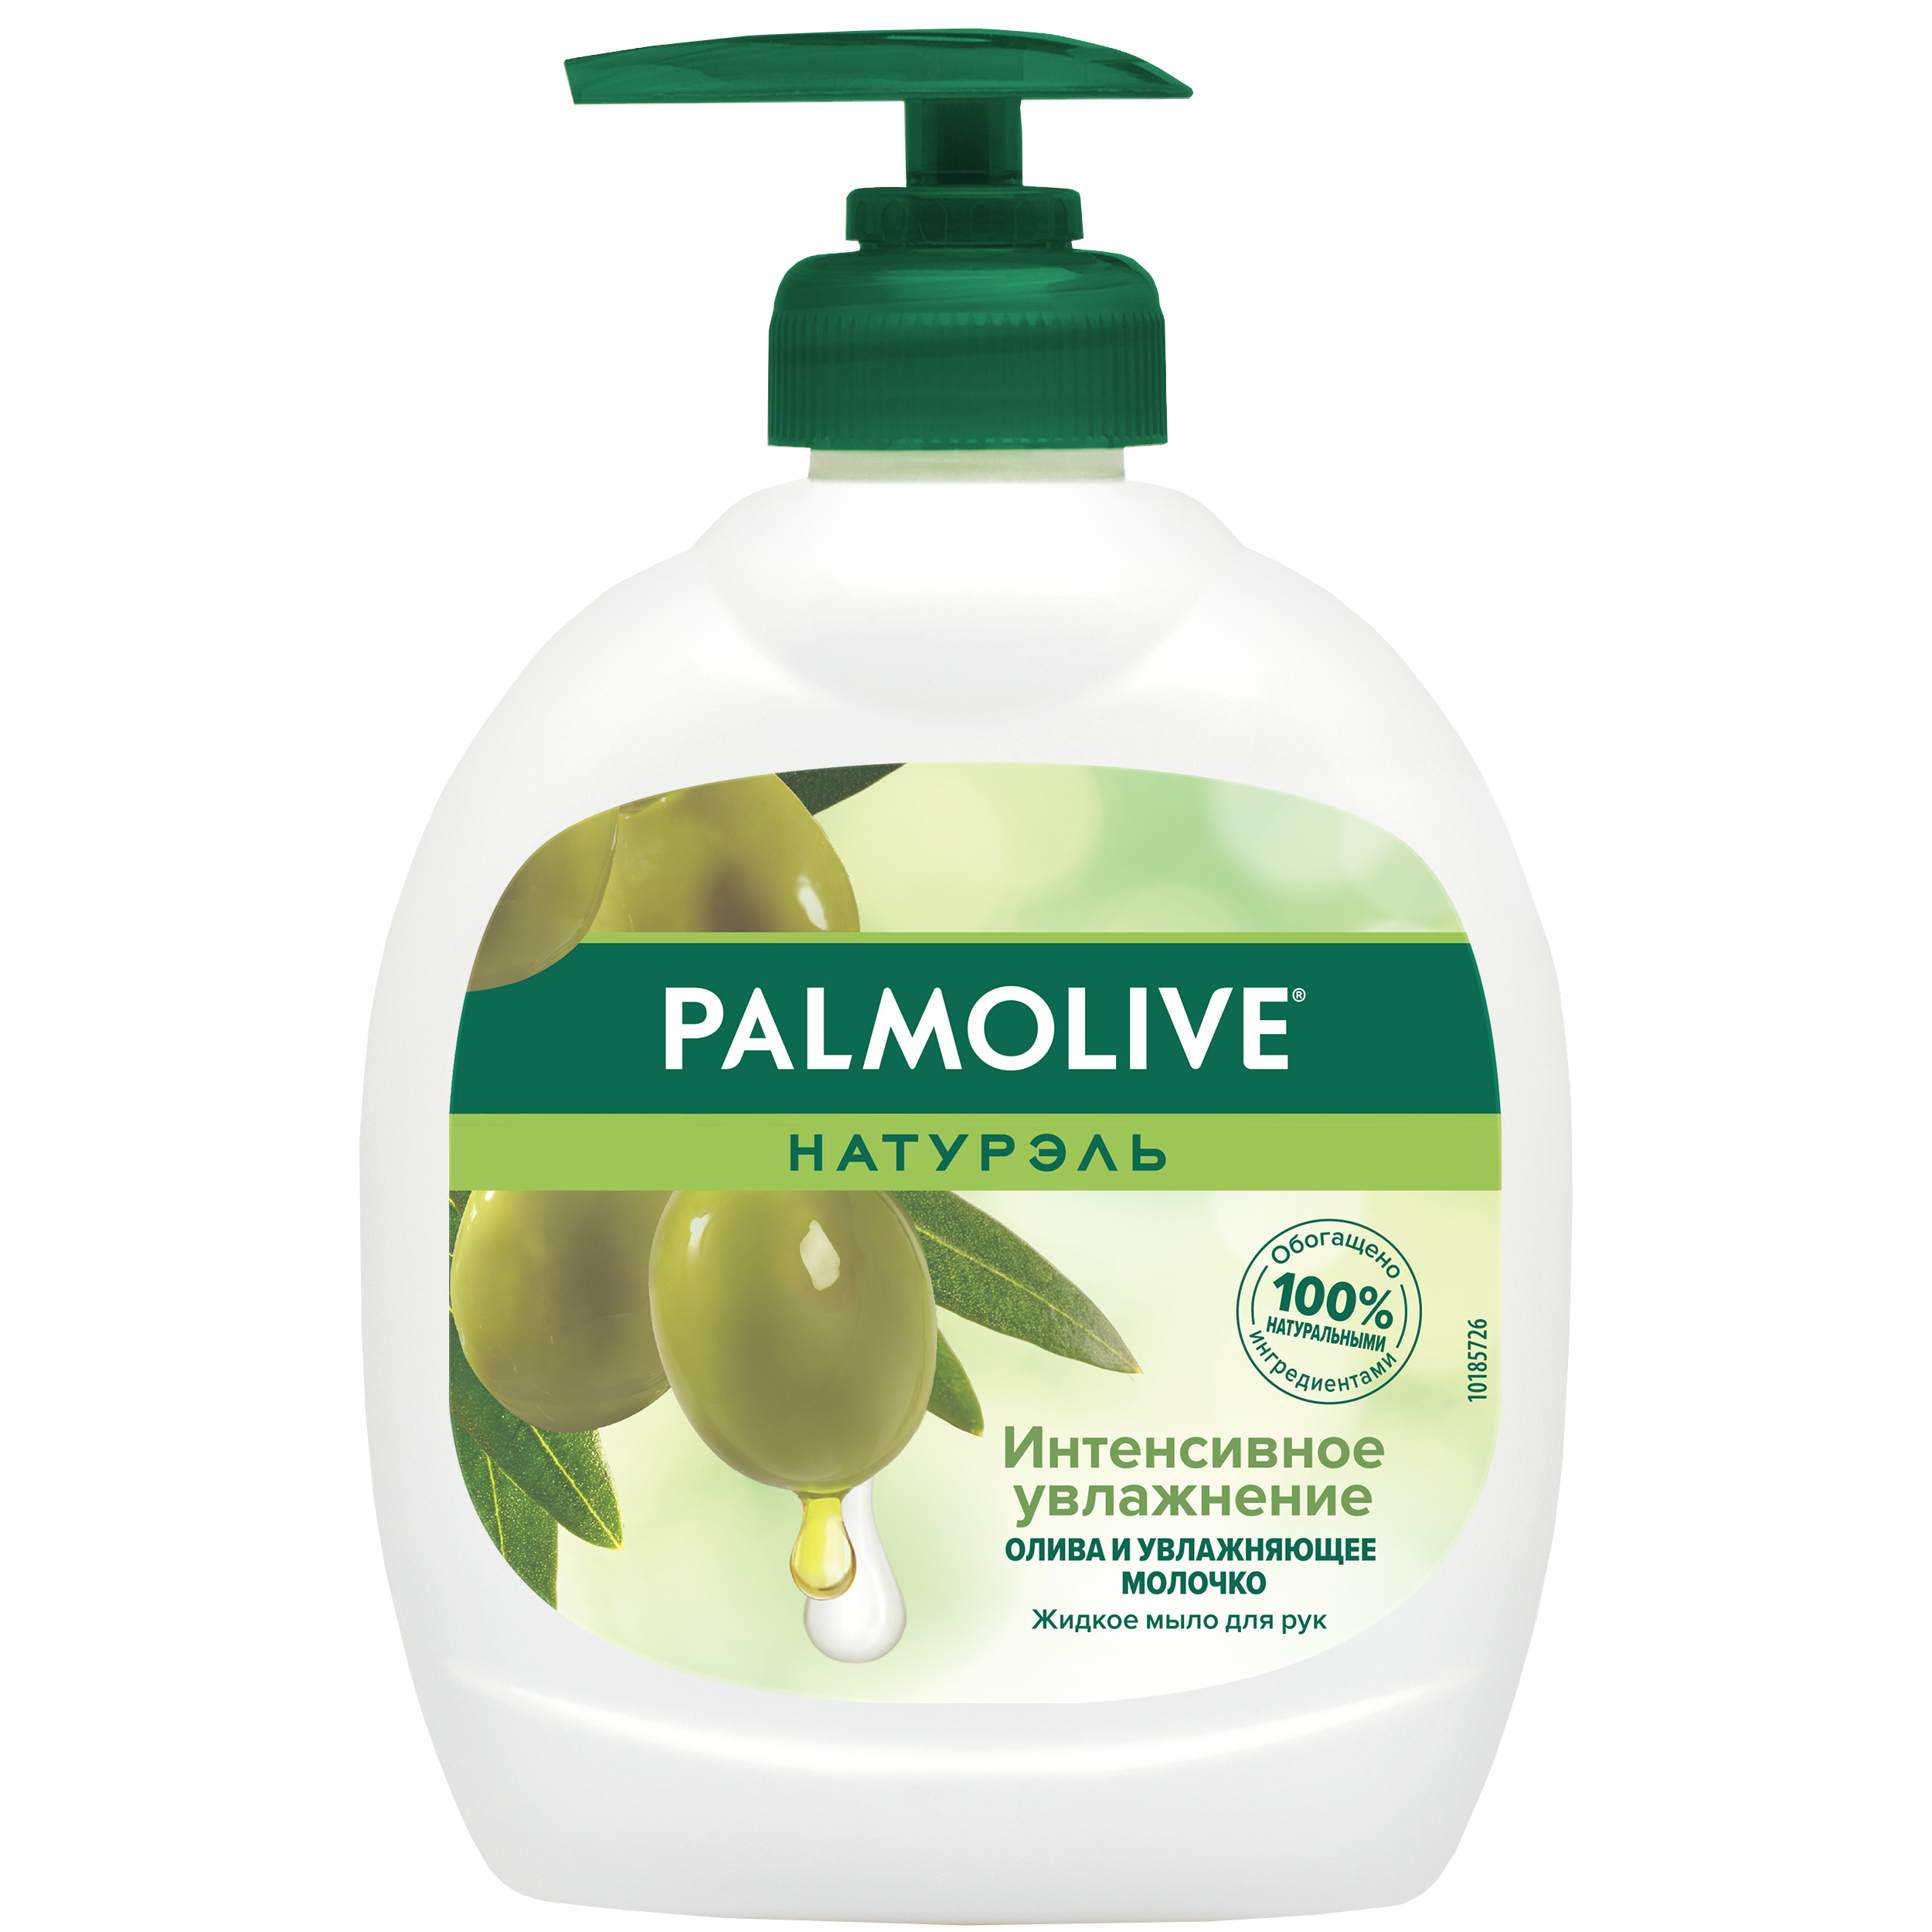 Мыло жидкое для рук Palmolive Интенсивное Увлажнение с увлажняющим молочком 300 мл косметическое мыло palmolive натурэль интенсивное увлажнение с экстрактом оливы 4x90 г